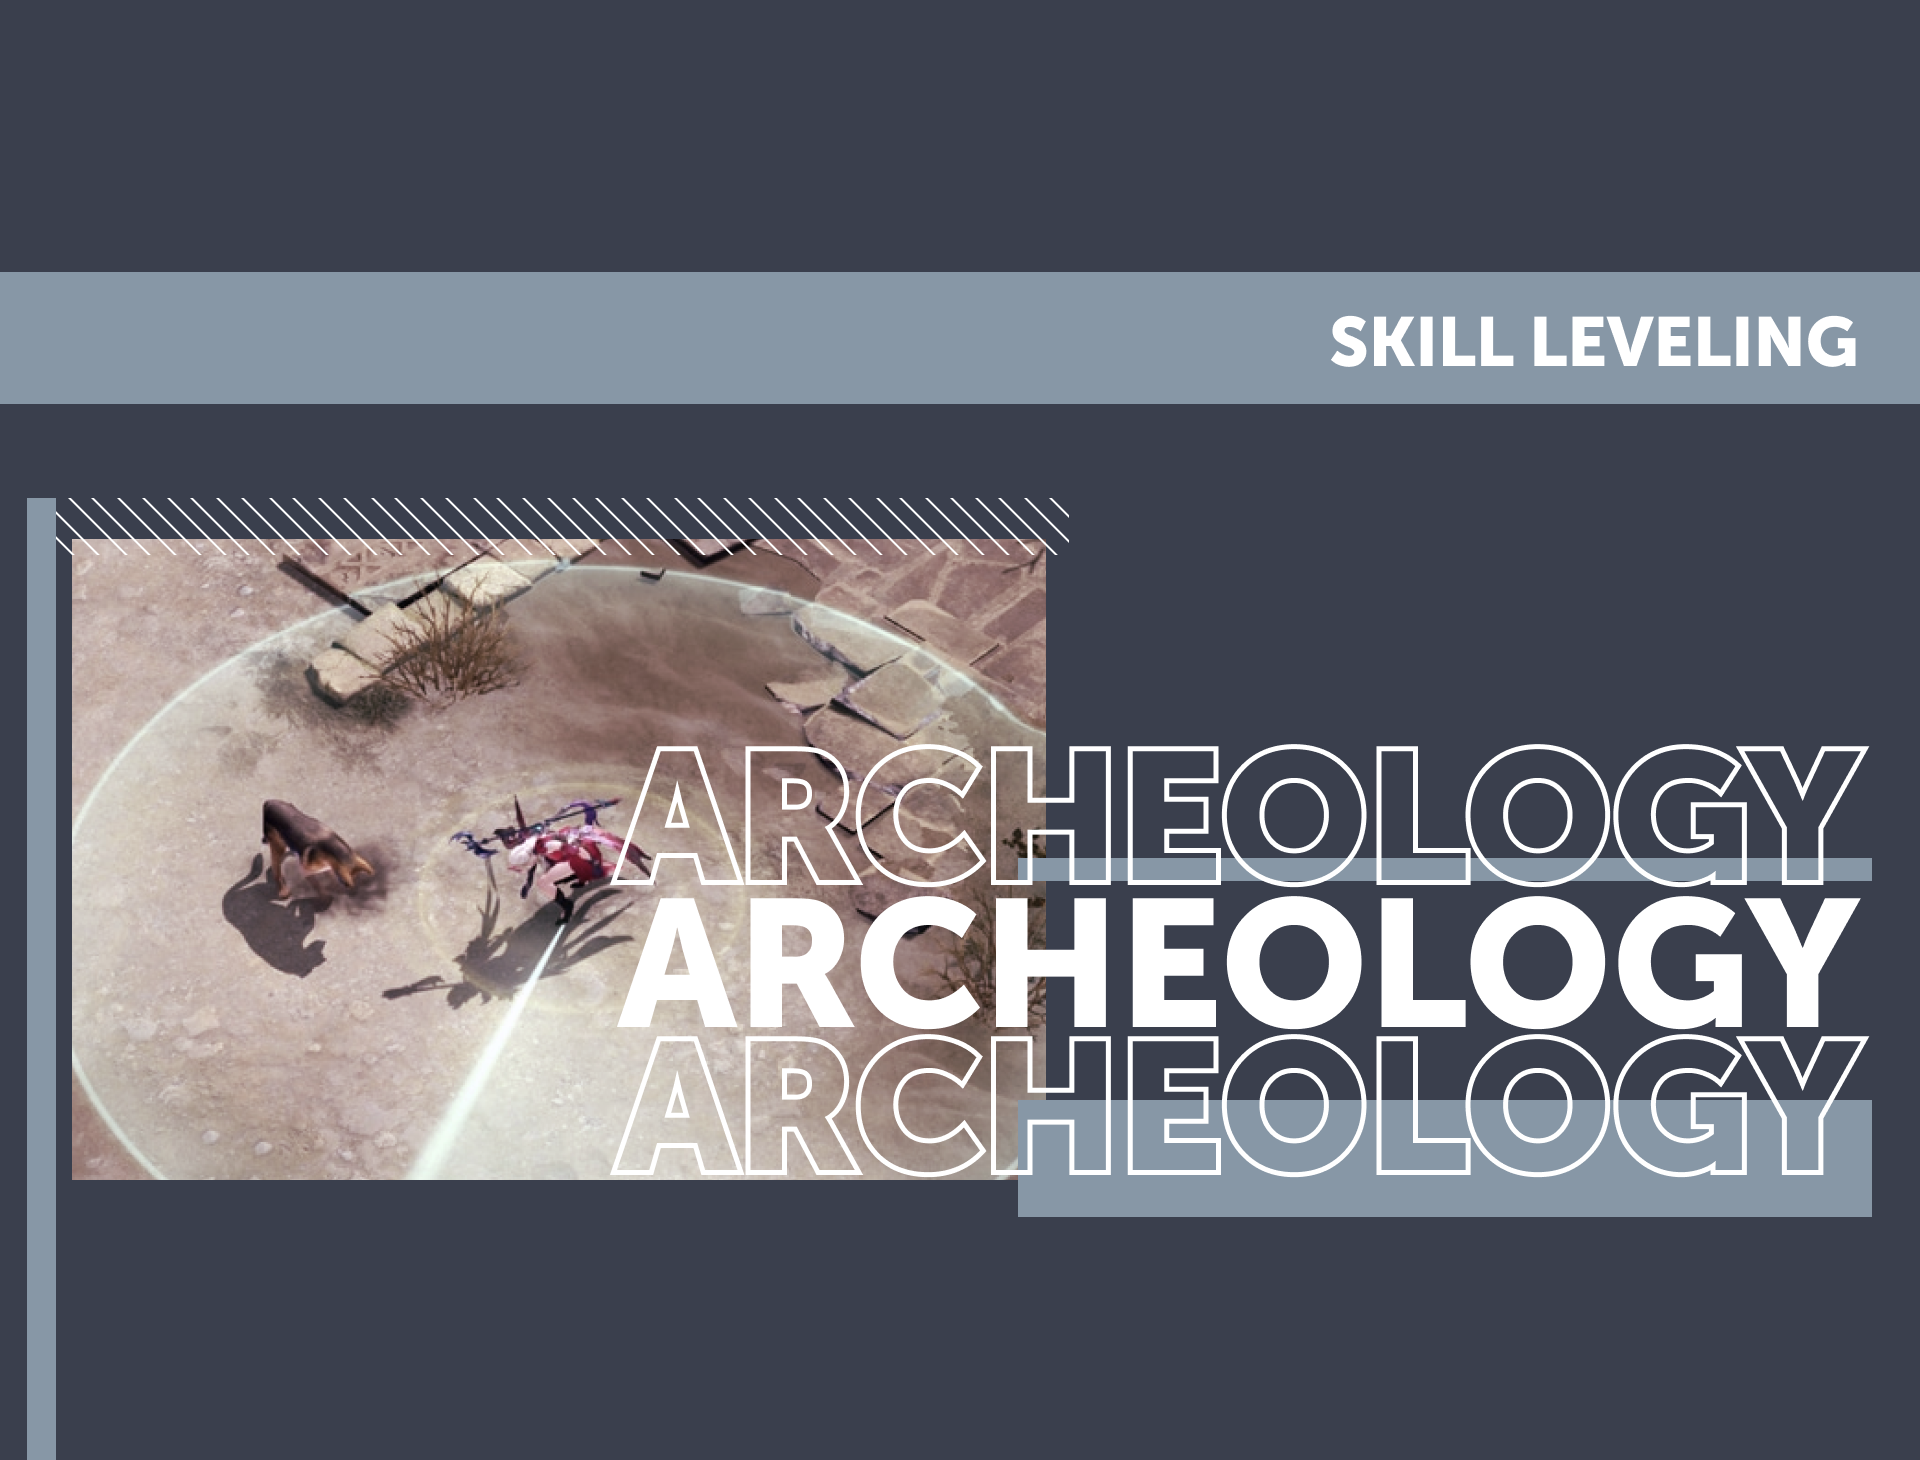 Archeology Skill Leveling